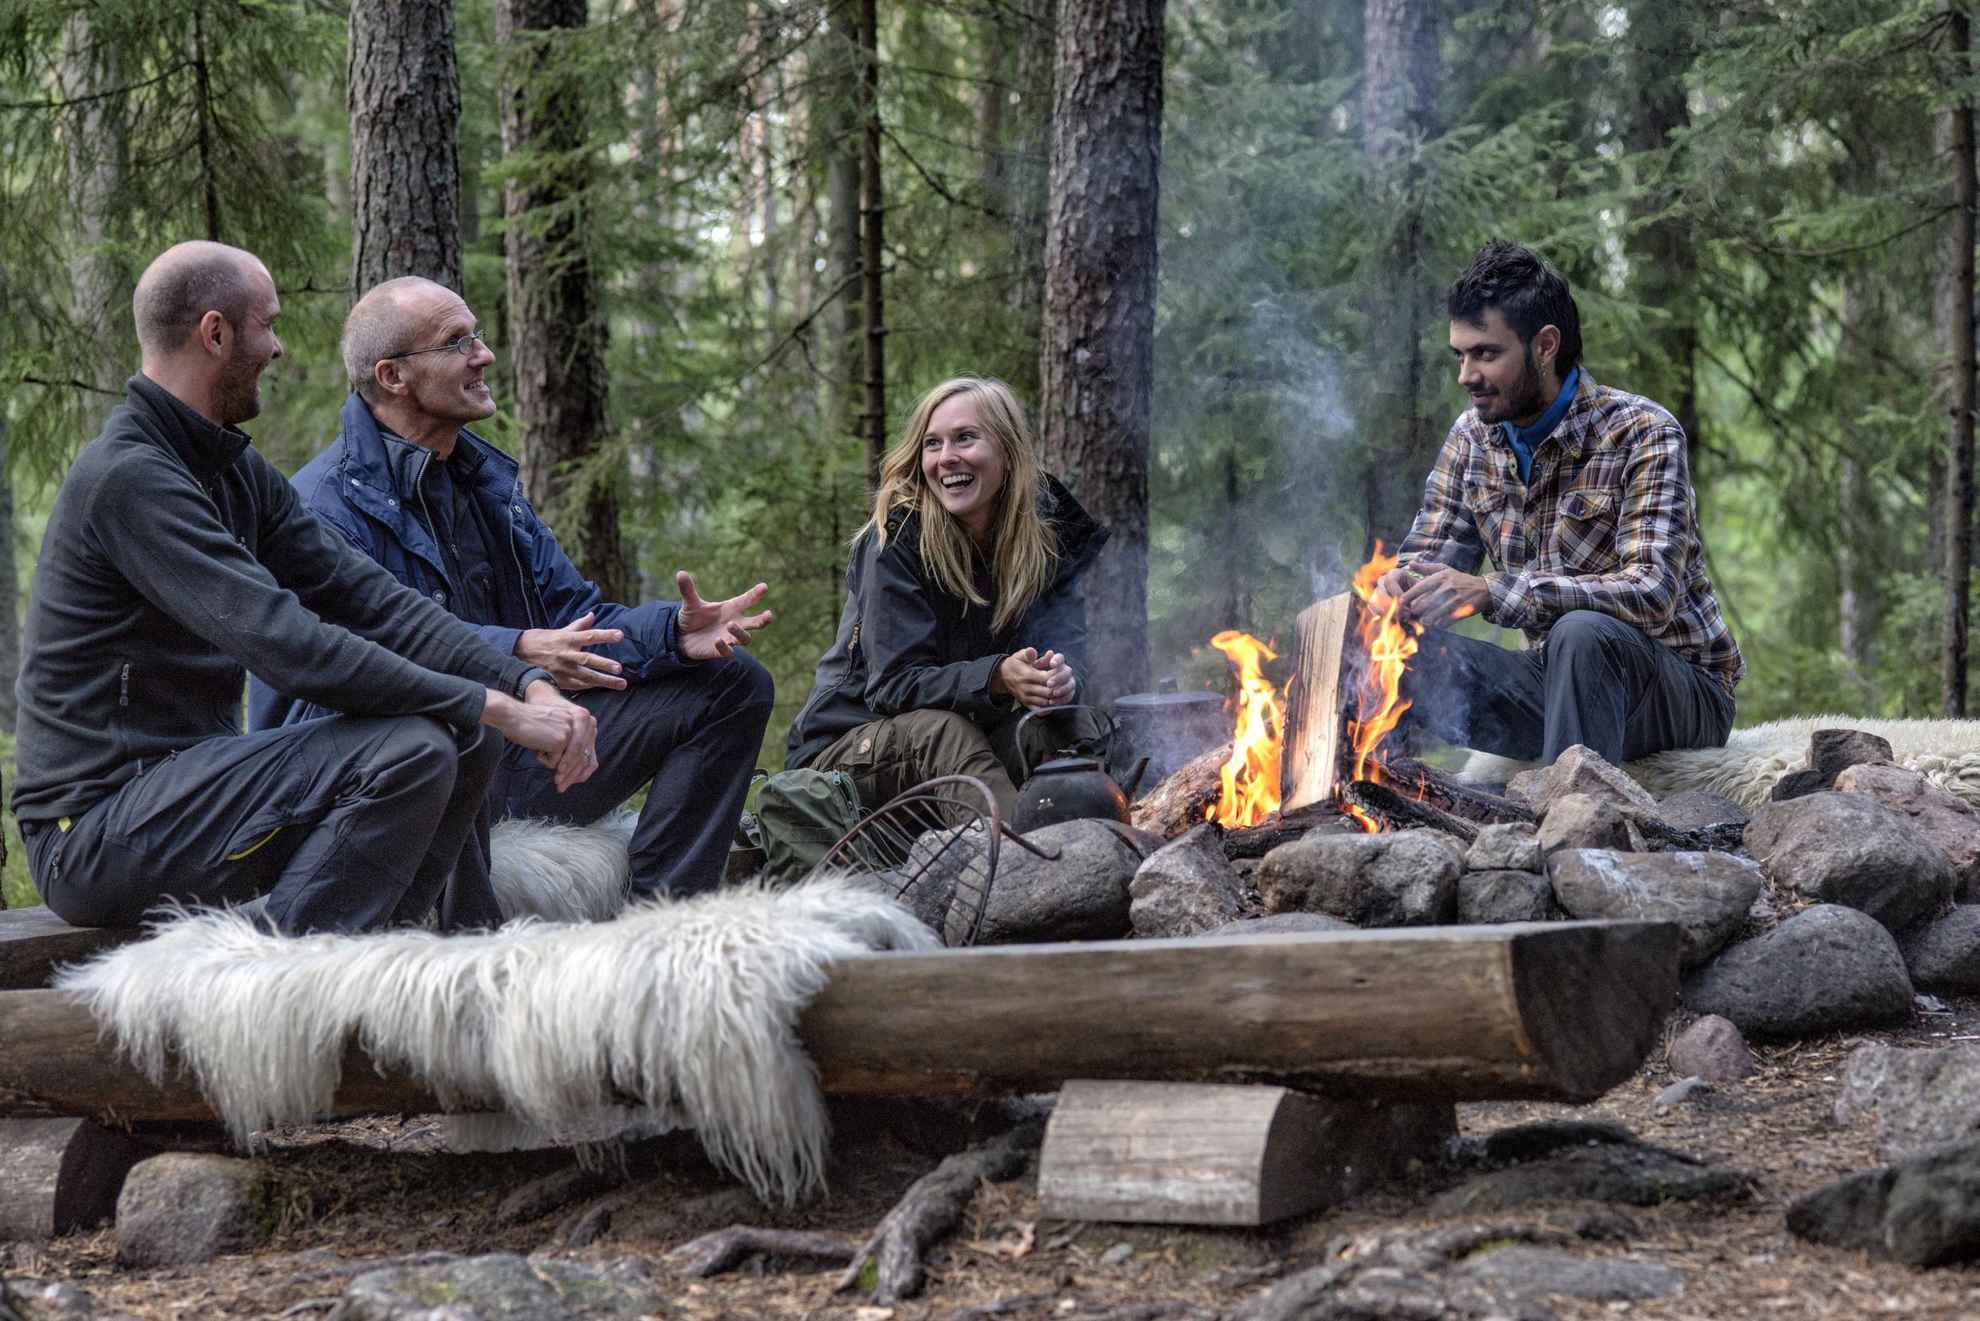 Quatre personnes sont en train de rire, assises autour d'un feu de camp, dans une forêt.